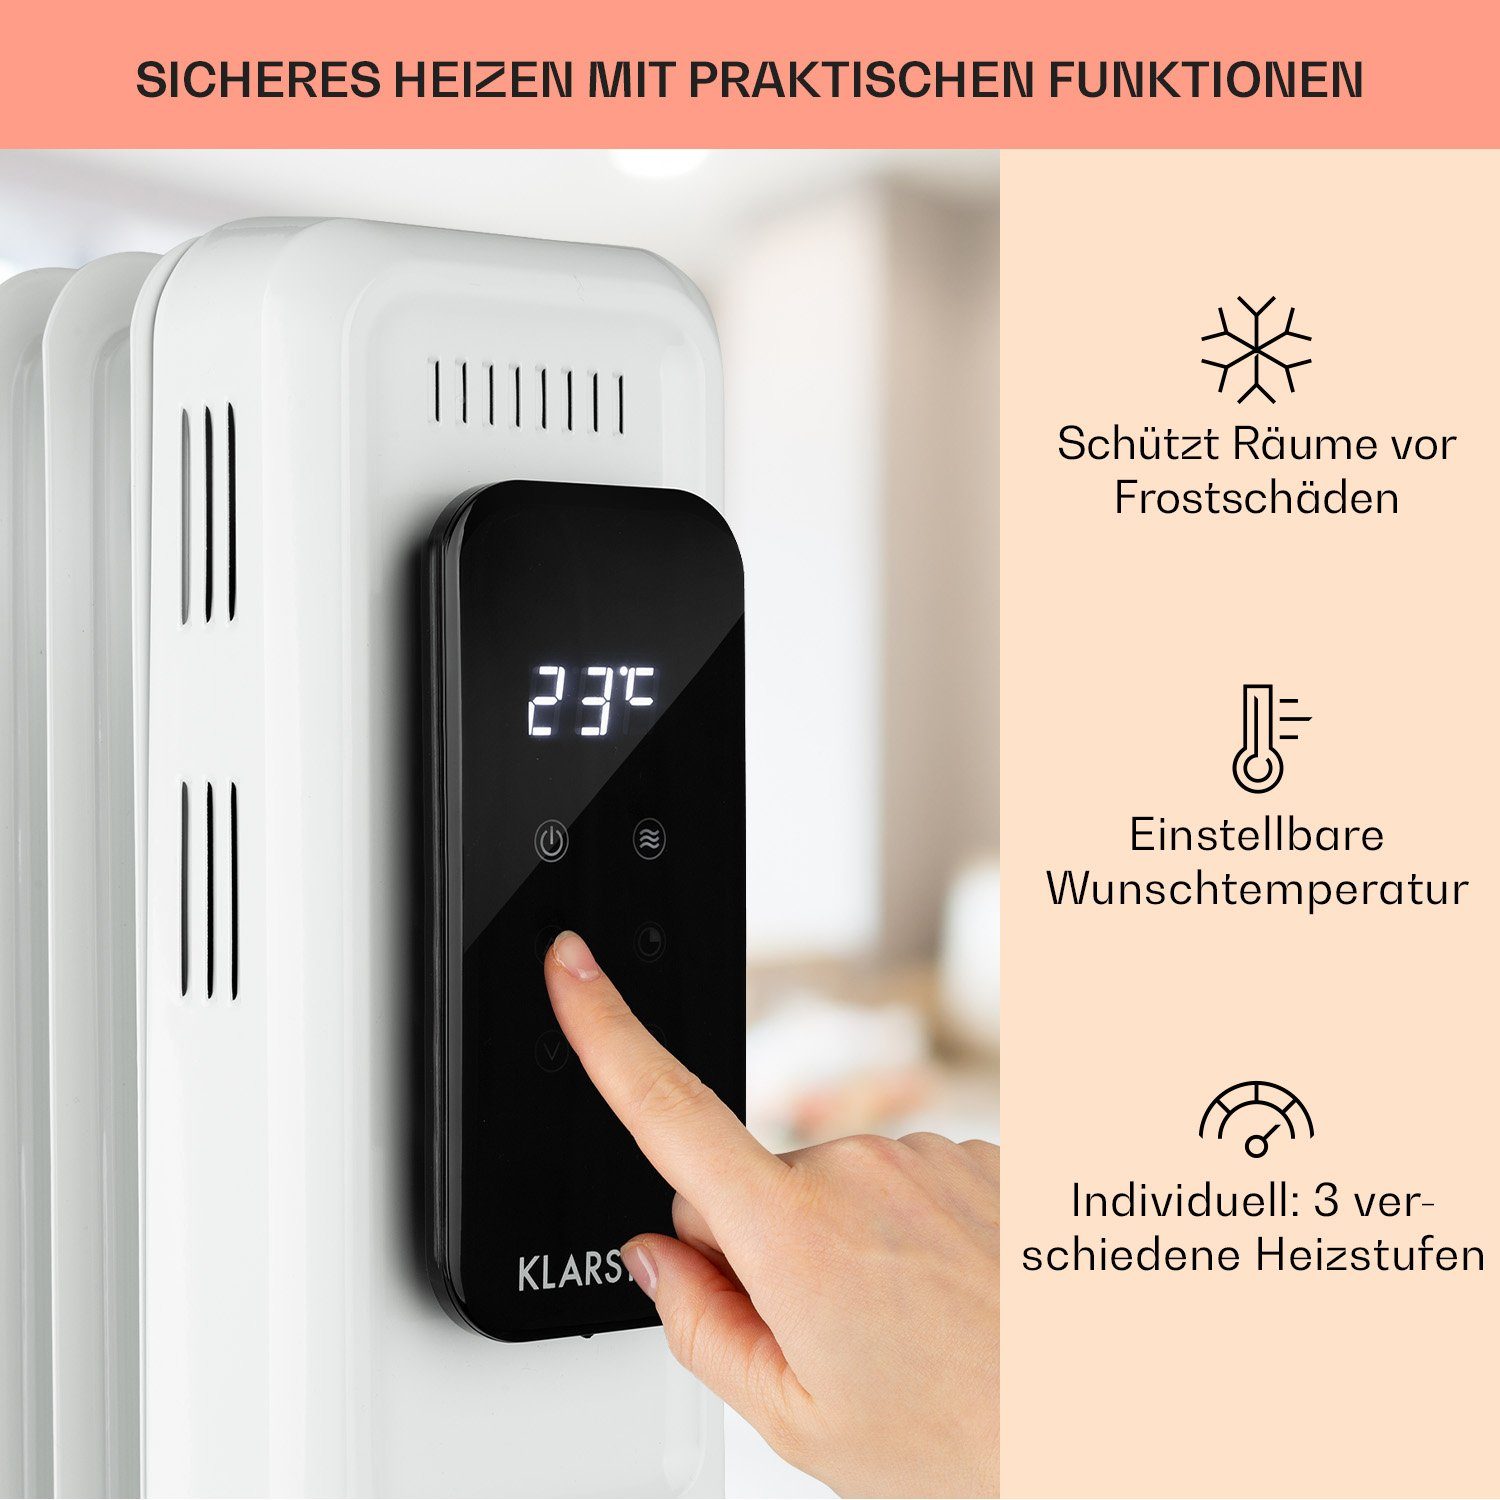 Thermostat Elevate energiesparend Ölradiator Thermaxx 2720 W, 10 Heizstrahler Heizkörper Smart, Klarstein Rippen Rollen